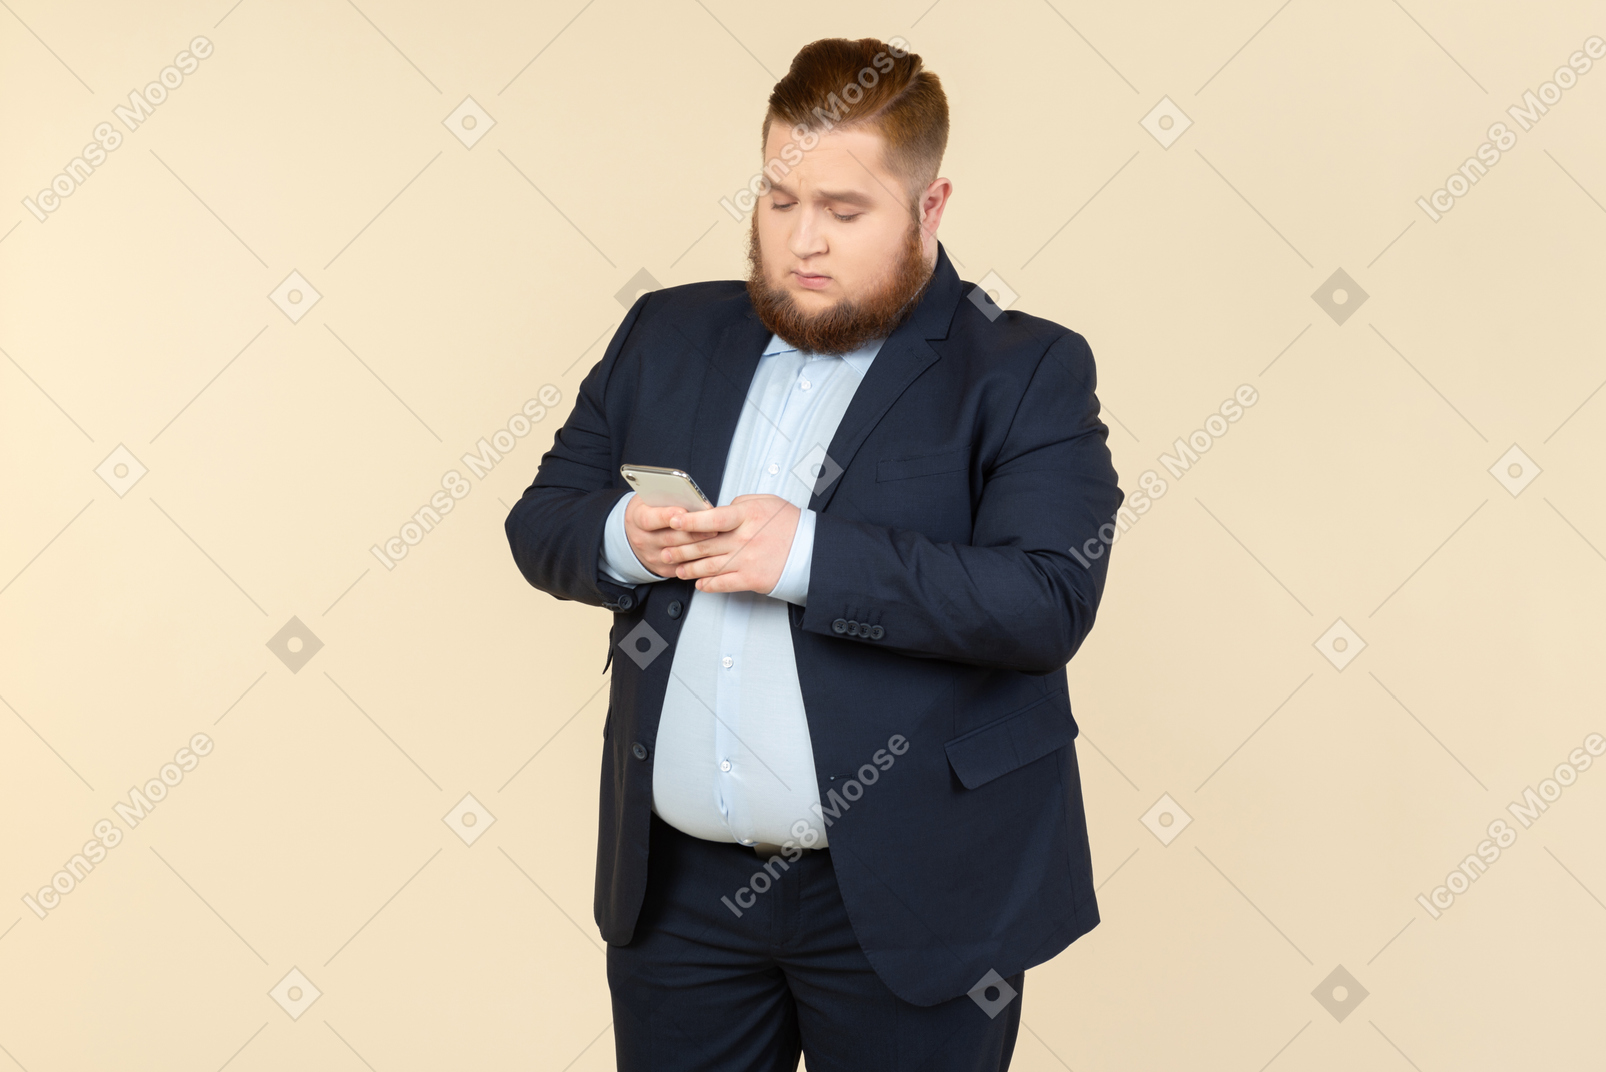 Joven oficinista con sobrepeso revisando el teléfono